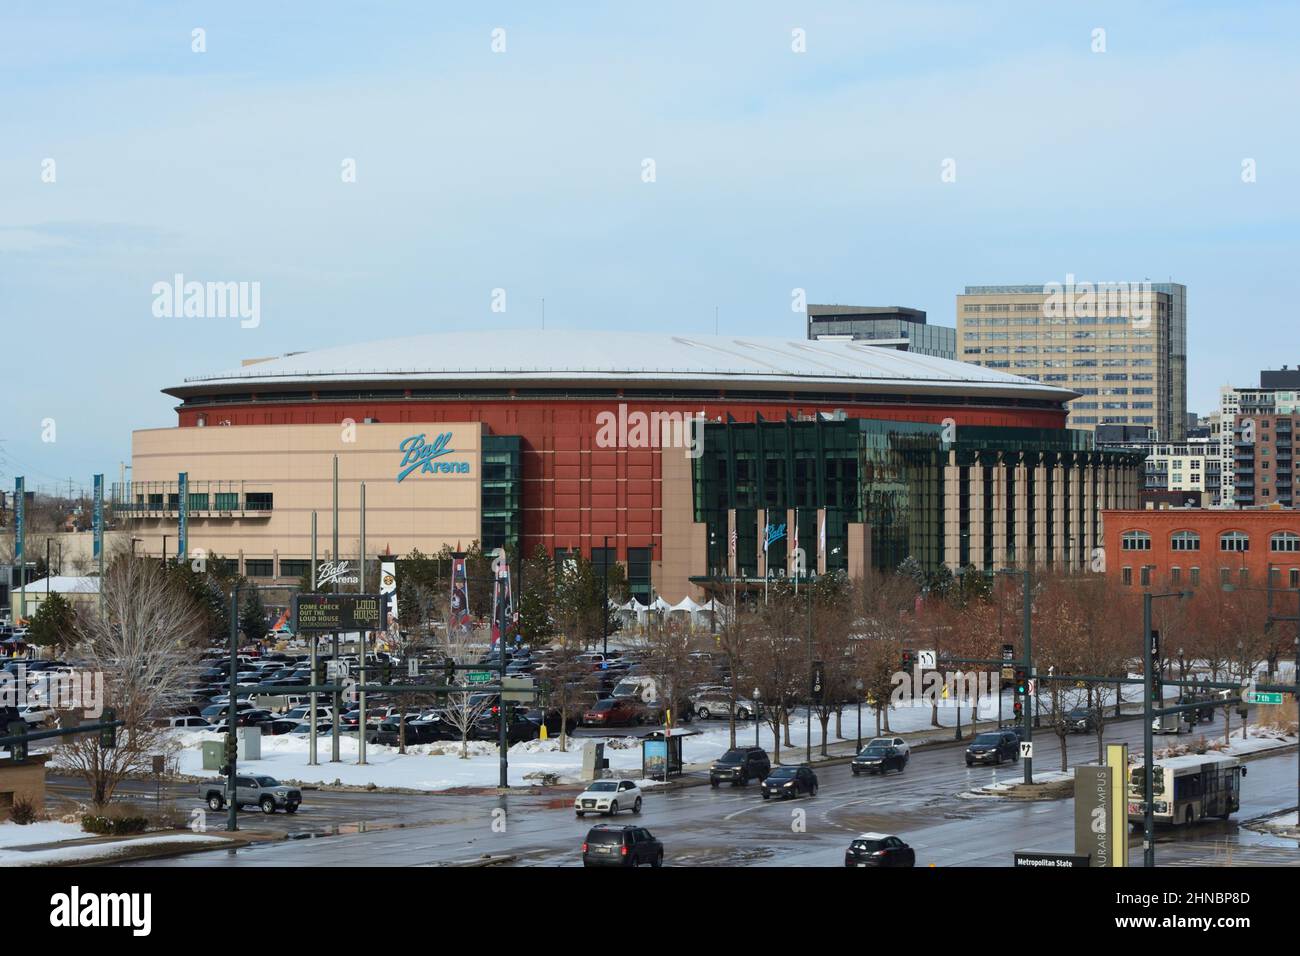 DENVER, Colorado, États-Unis - 12 février 2022 : ball Arena est un stade qui abrite plusieurs équipes sportives professionnelles, dont les Denver Nuggets of t. Banque D'Images